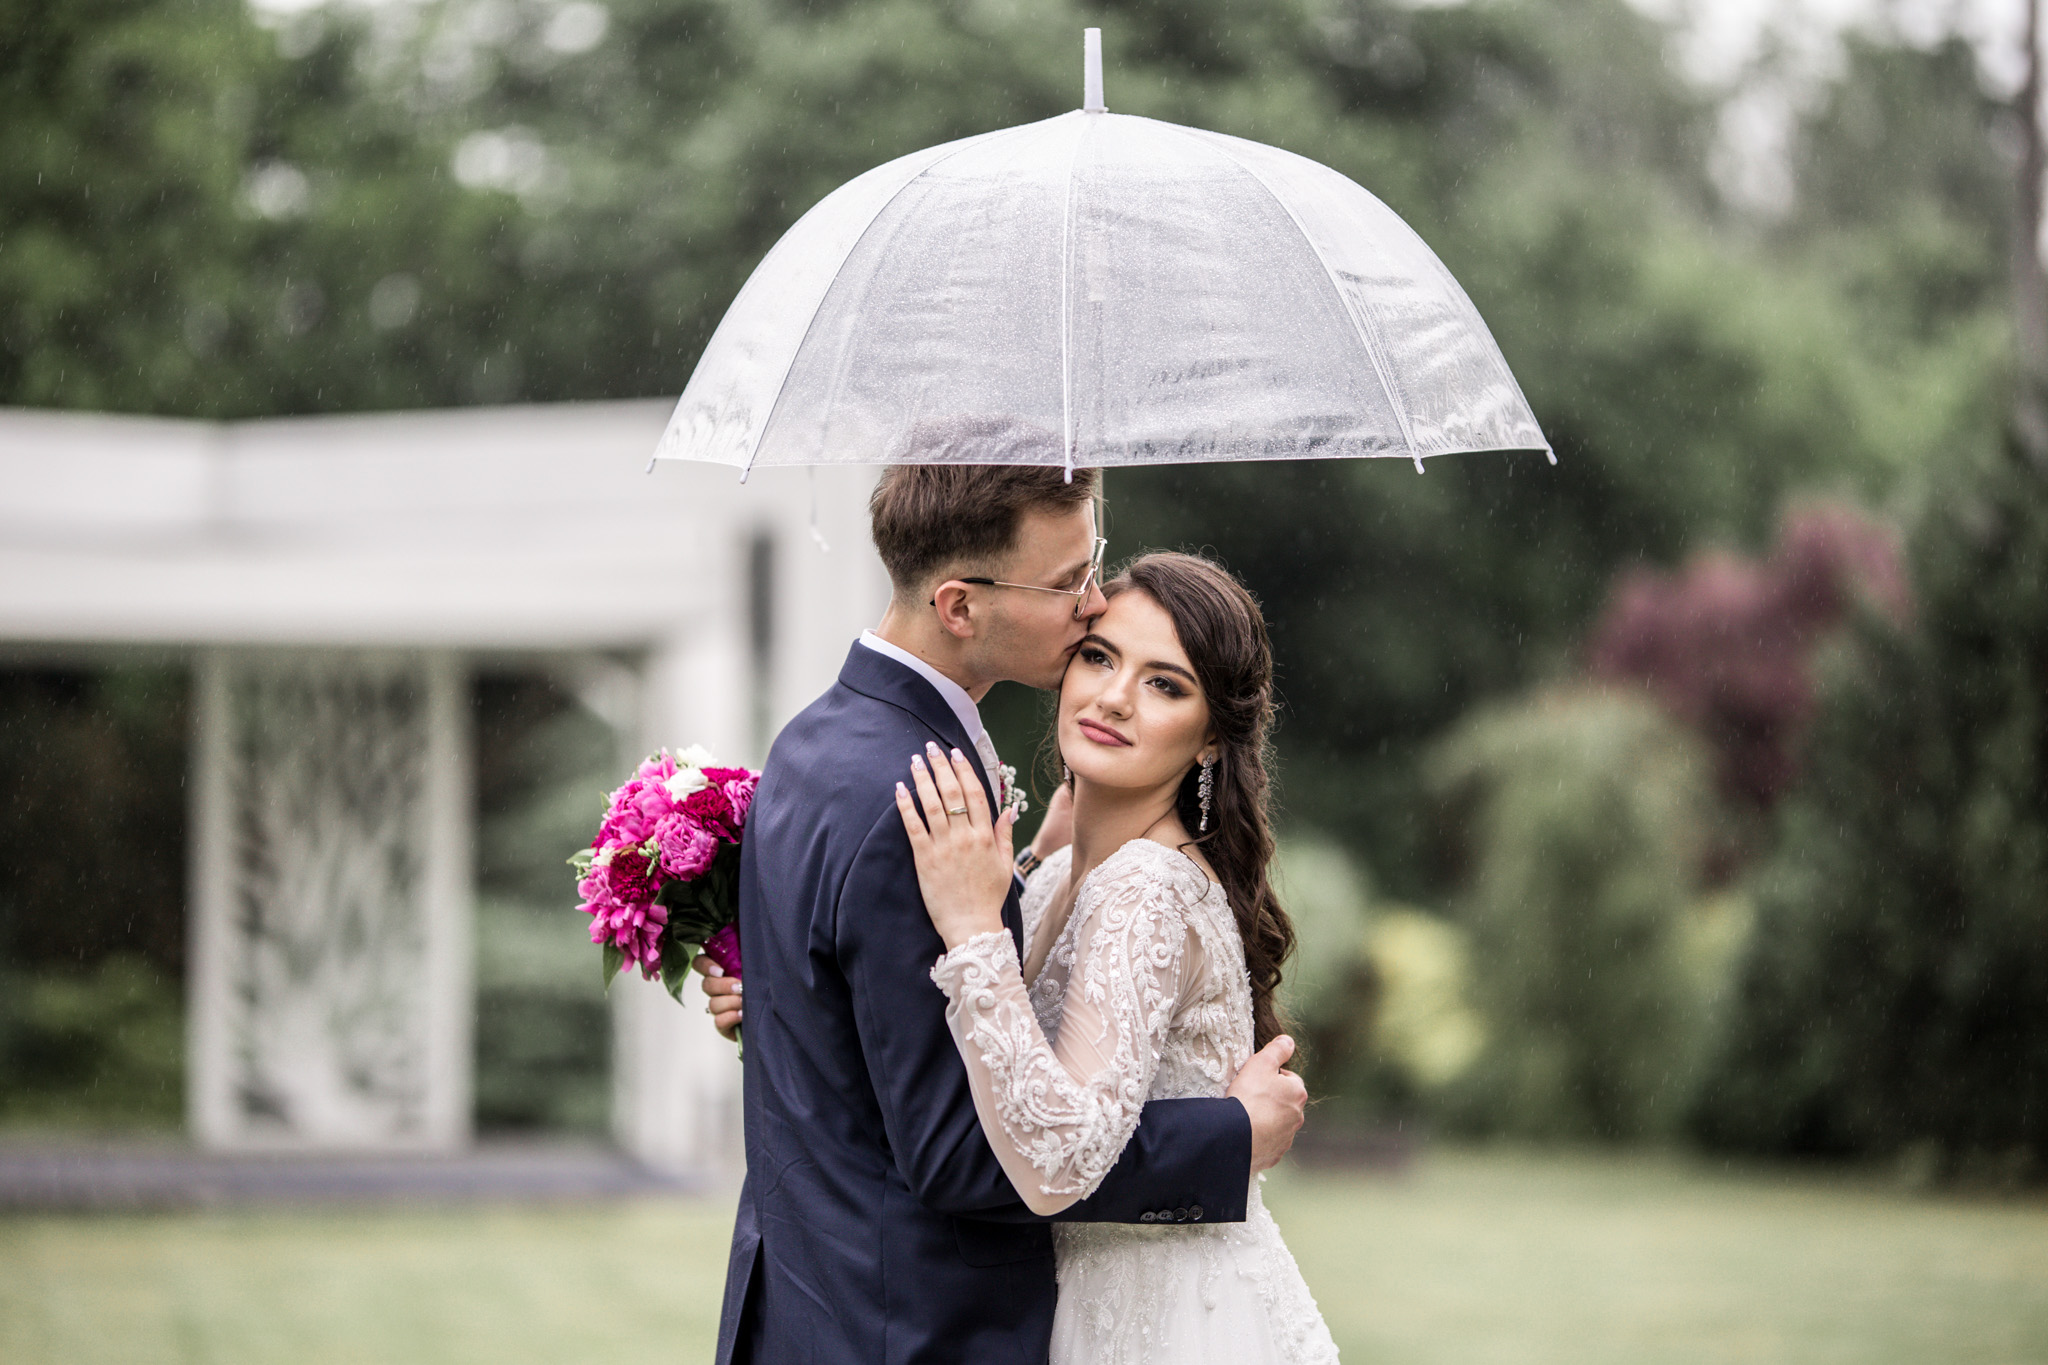 Sesja ślubna w deszczu pod przezroczystym parasolem